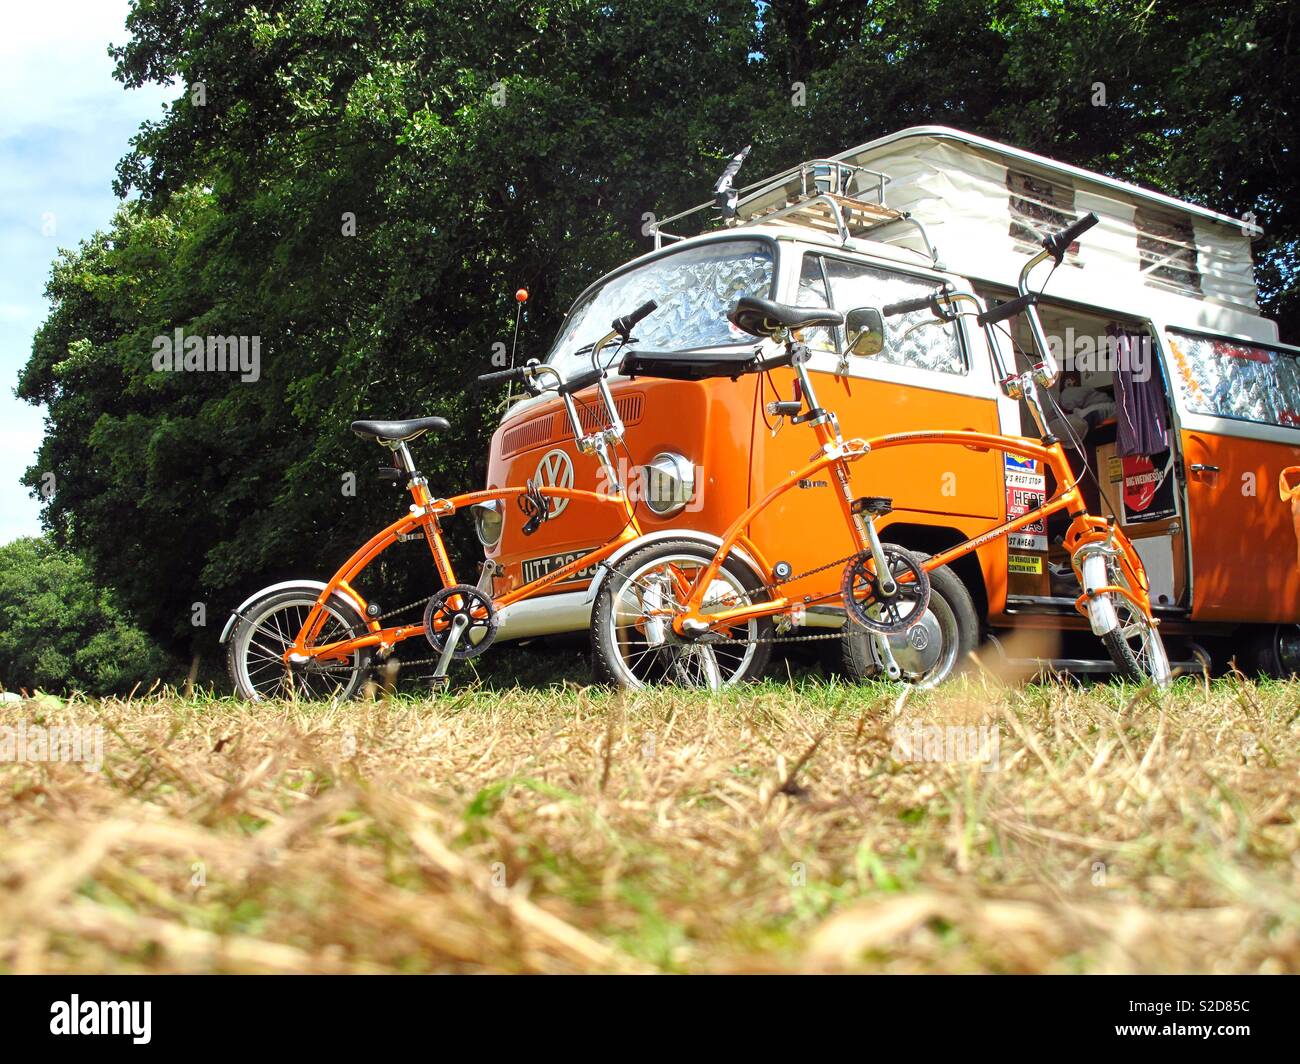 Le camping-car Volkswagen orange avec des vélos rétro campé à tehidy woods, Cornwall Banque D'Images